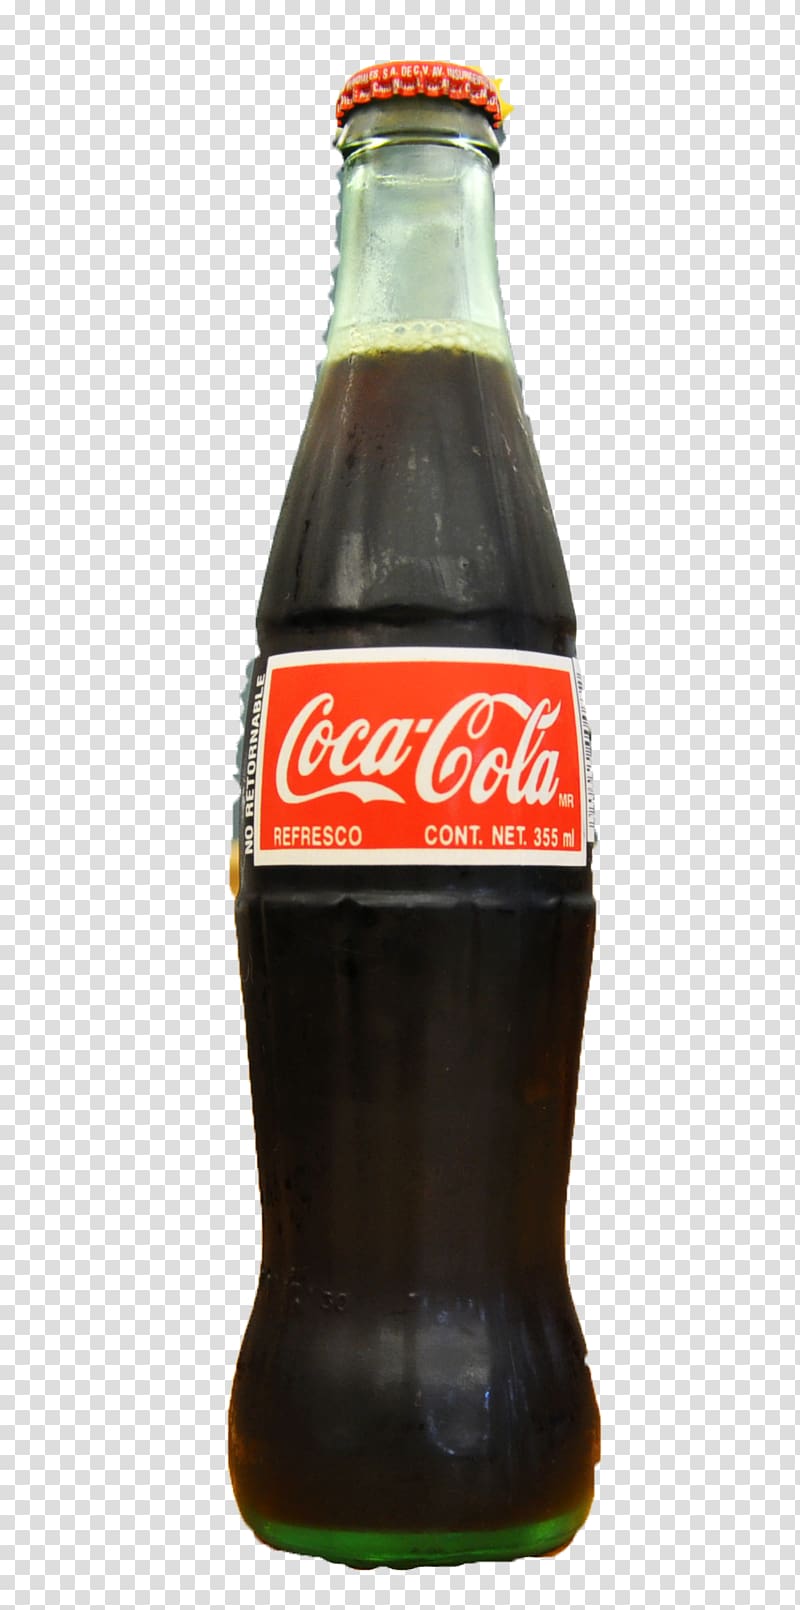 Coca-Cola Soft drink Diet Coke, Coca Cola bottle transparent background PNG clipart